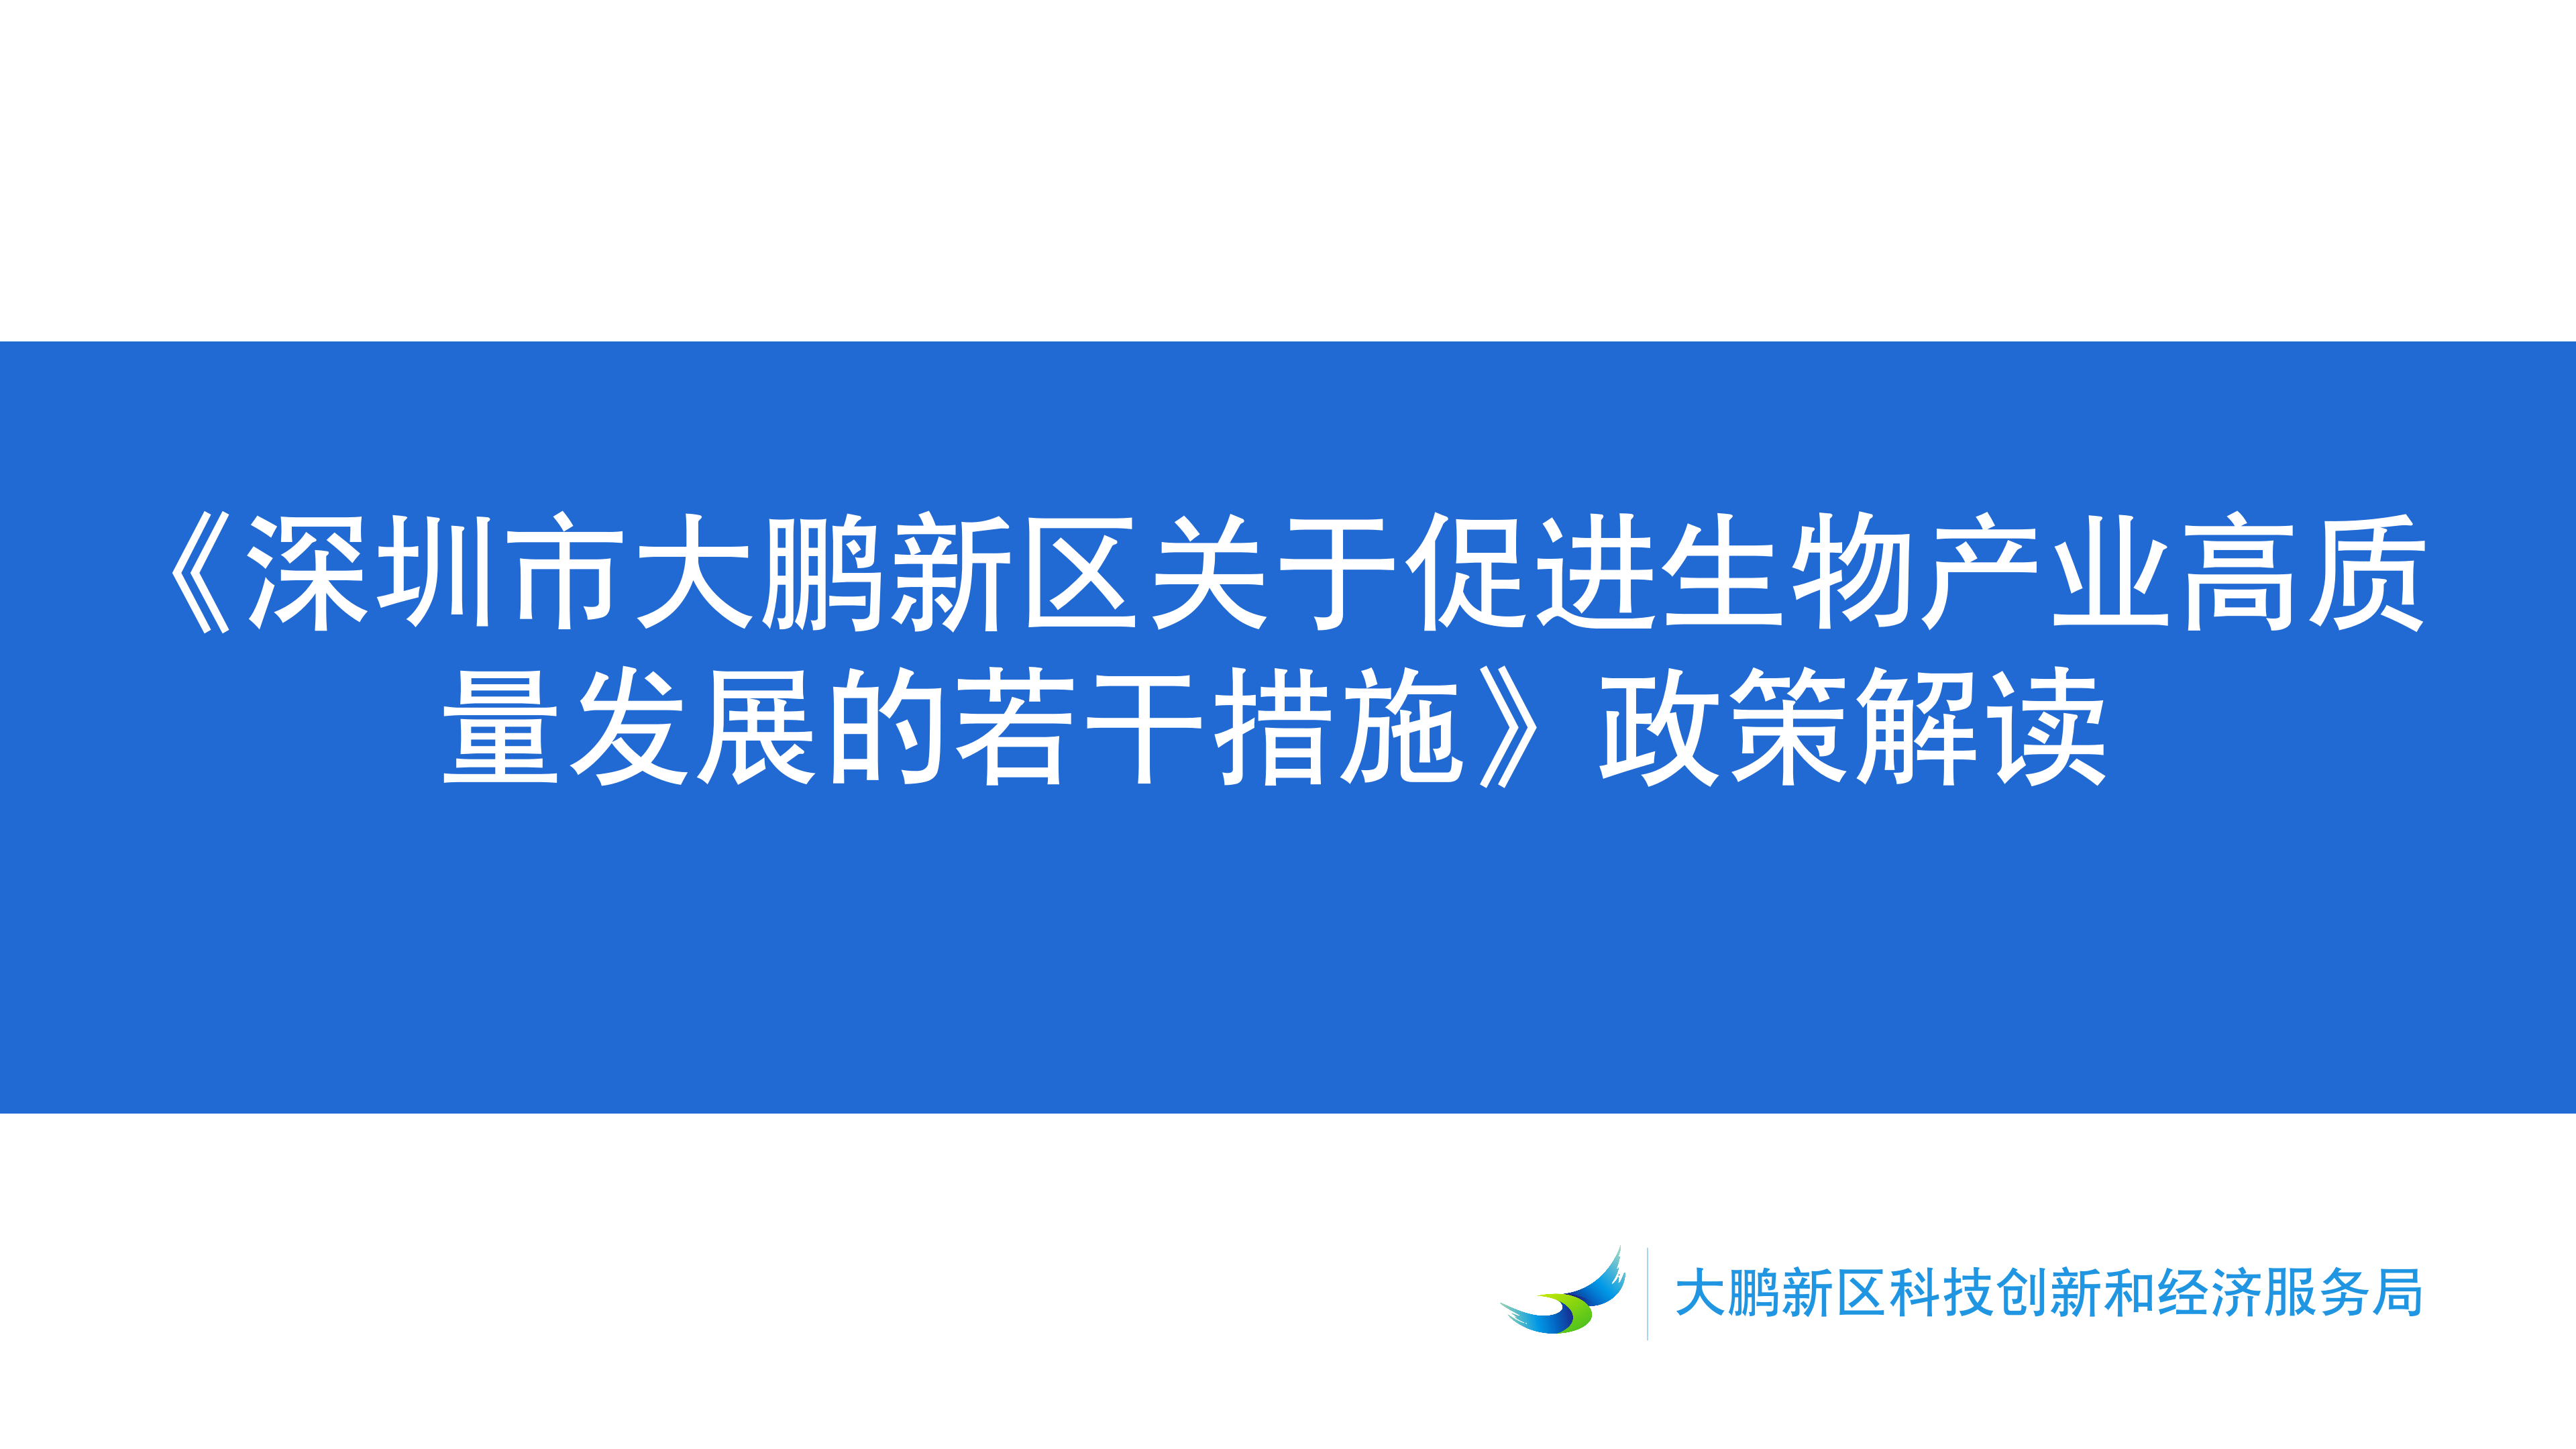 《深圳市大鹏新区关于促进生物产业发展的若干措施》政策解读_01.png